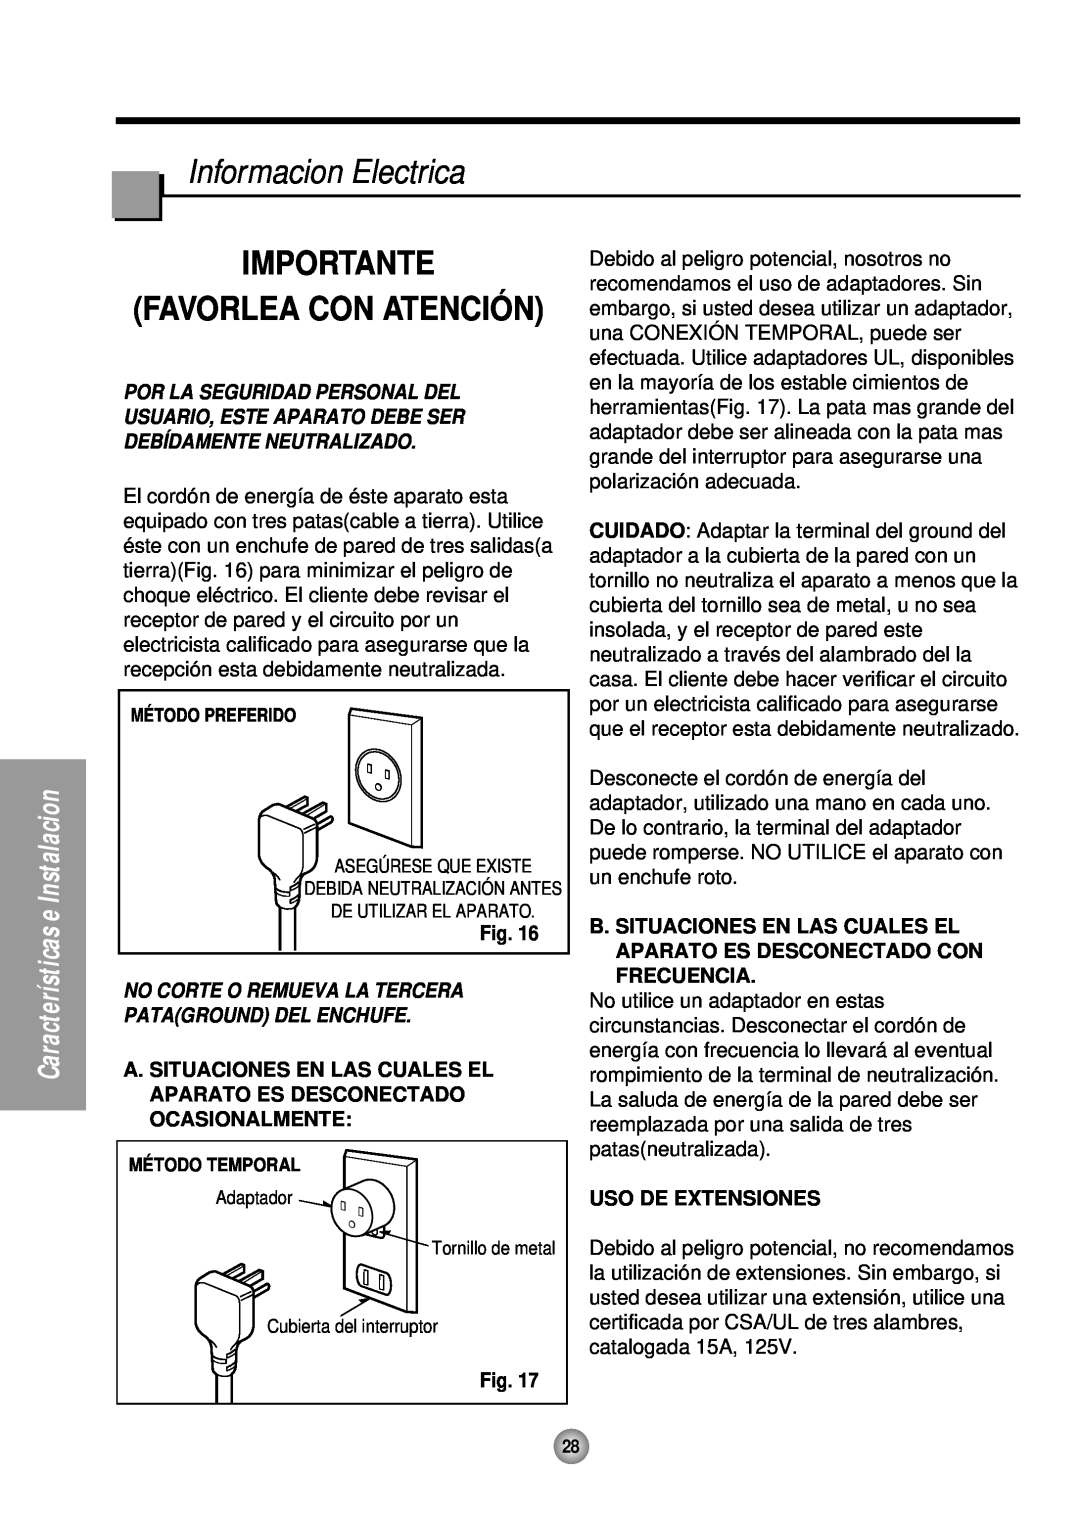 Quasar HQ-2081TH manual Informacion Electrica, Importante, Uso De Extensiones, Favorlea Con Atenció N 